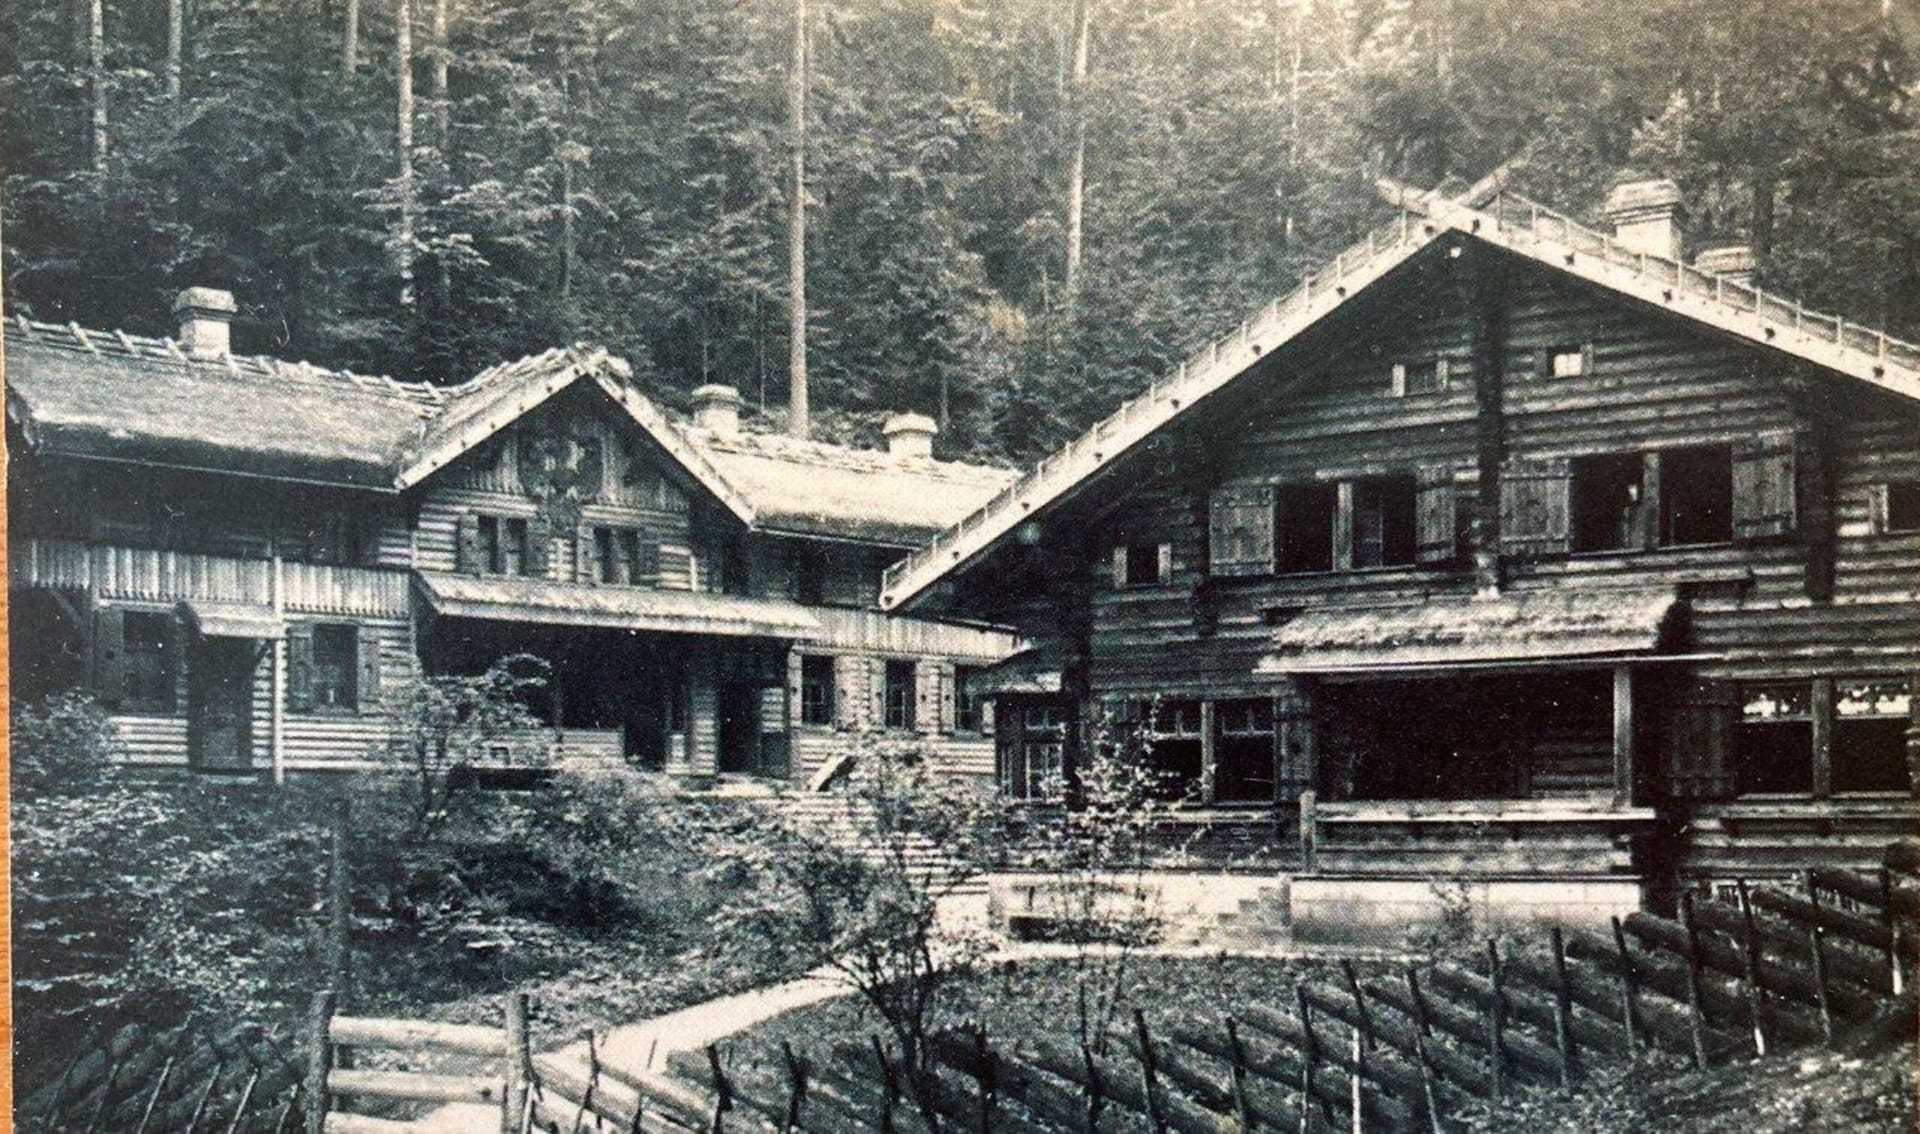 Takhle vypadaly chaty Na Tokáni ve 30. letech minulého století